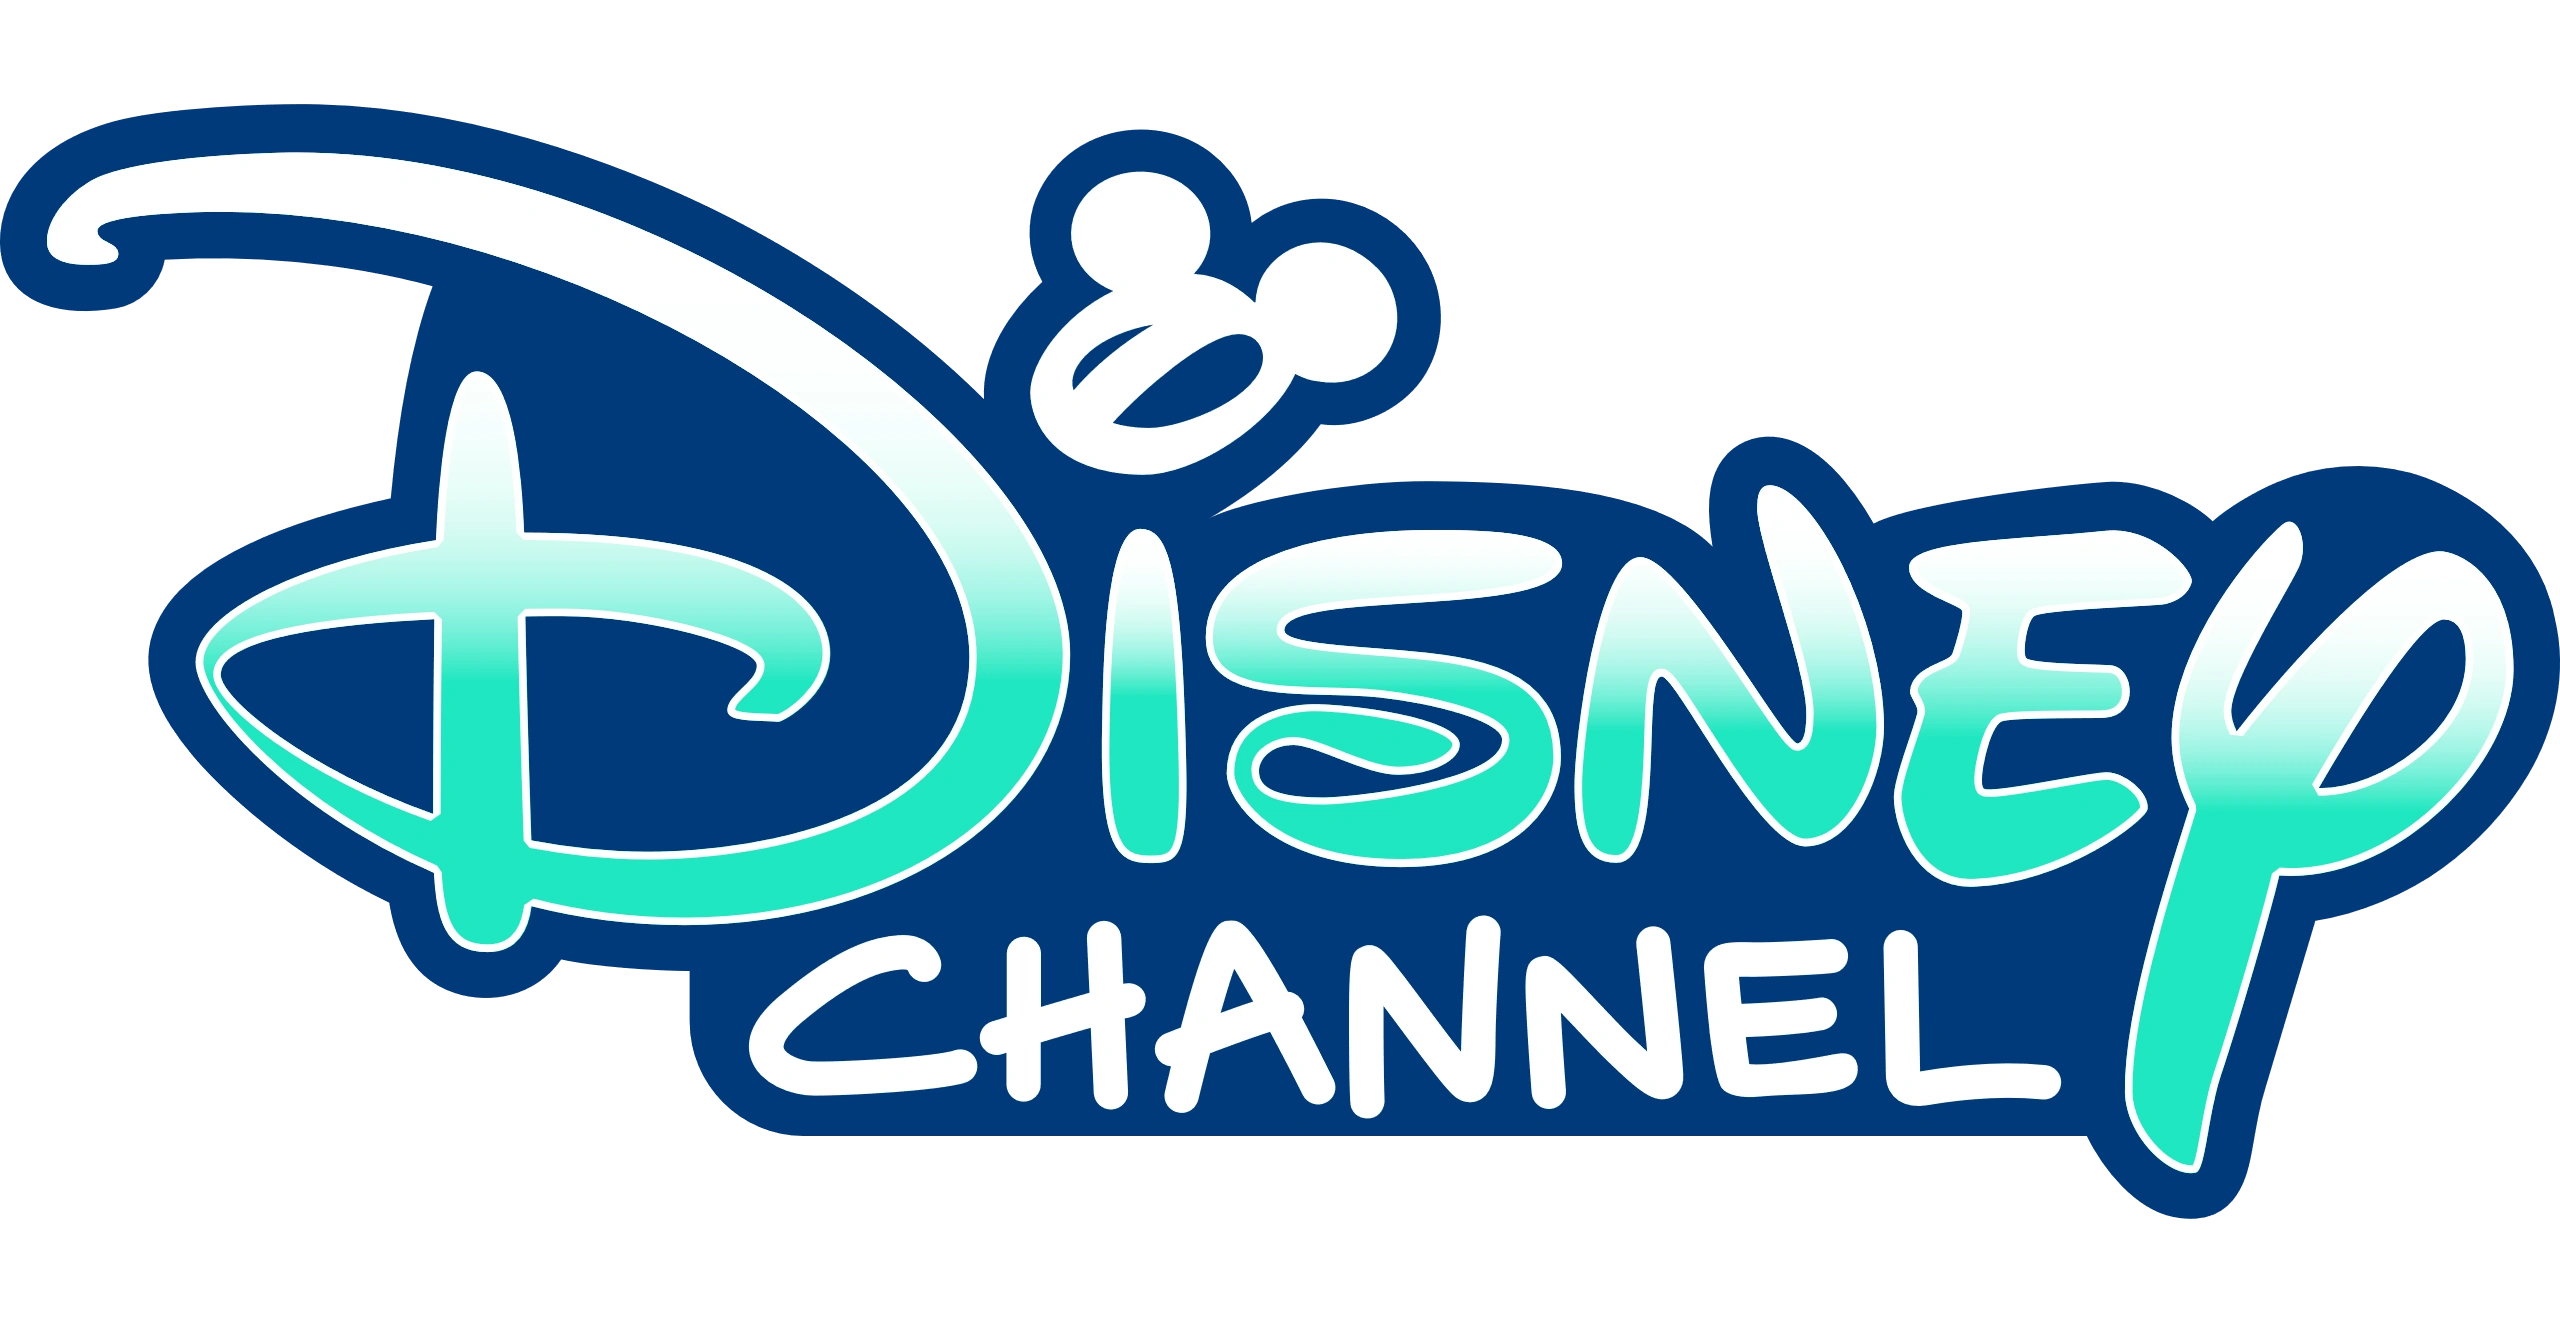 Le logo Disney Channel Europe, avec un texte stylisé et coloré avec « disney » en bleu avec une silhouette classique de Mickey Mouse parsemant le « i » et « channel » en vert, le tout sur